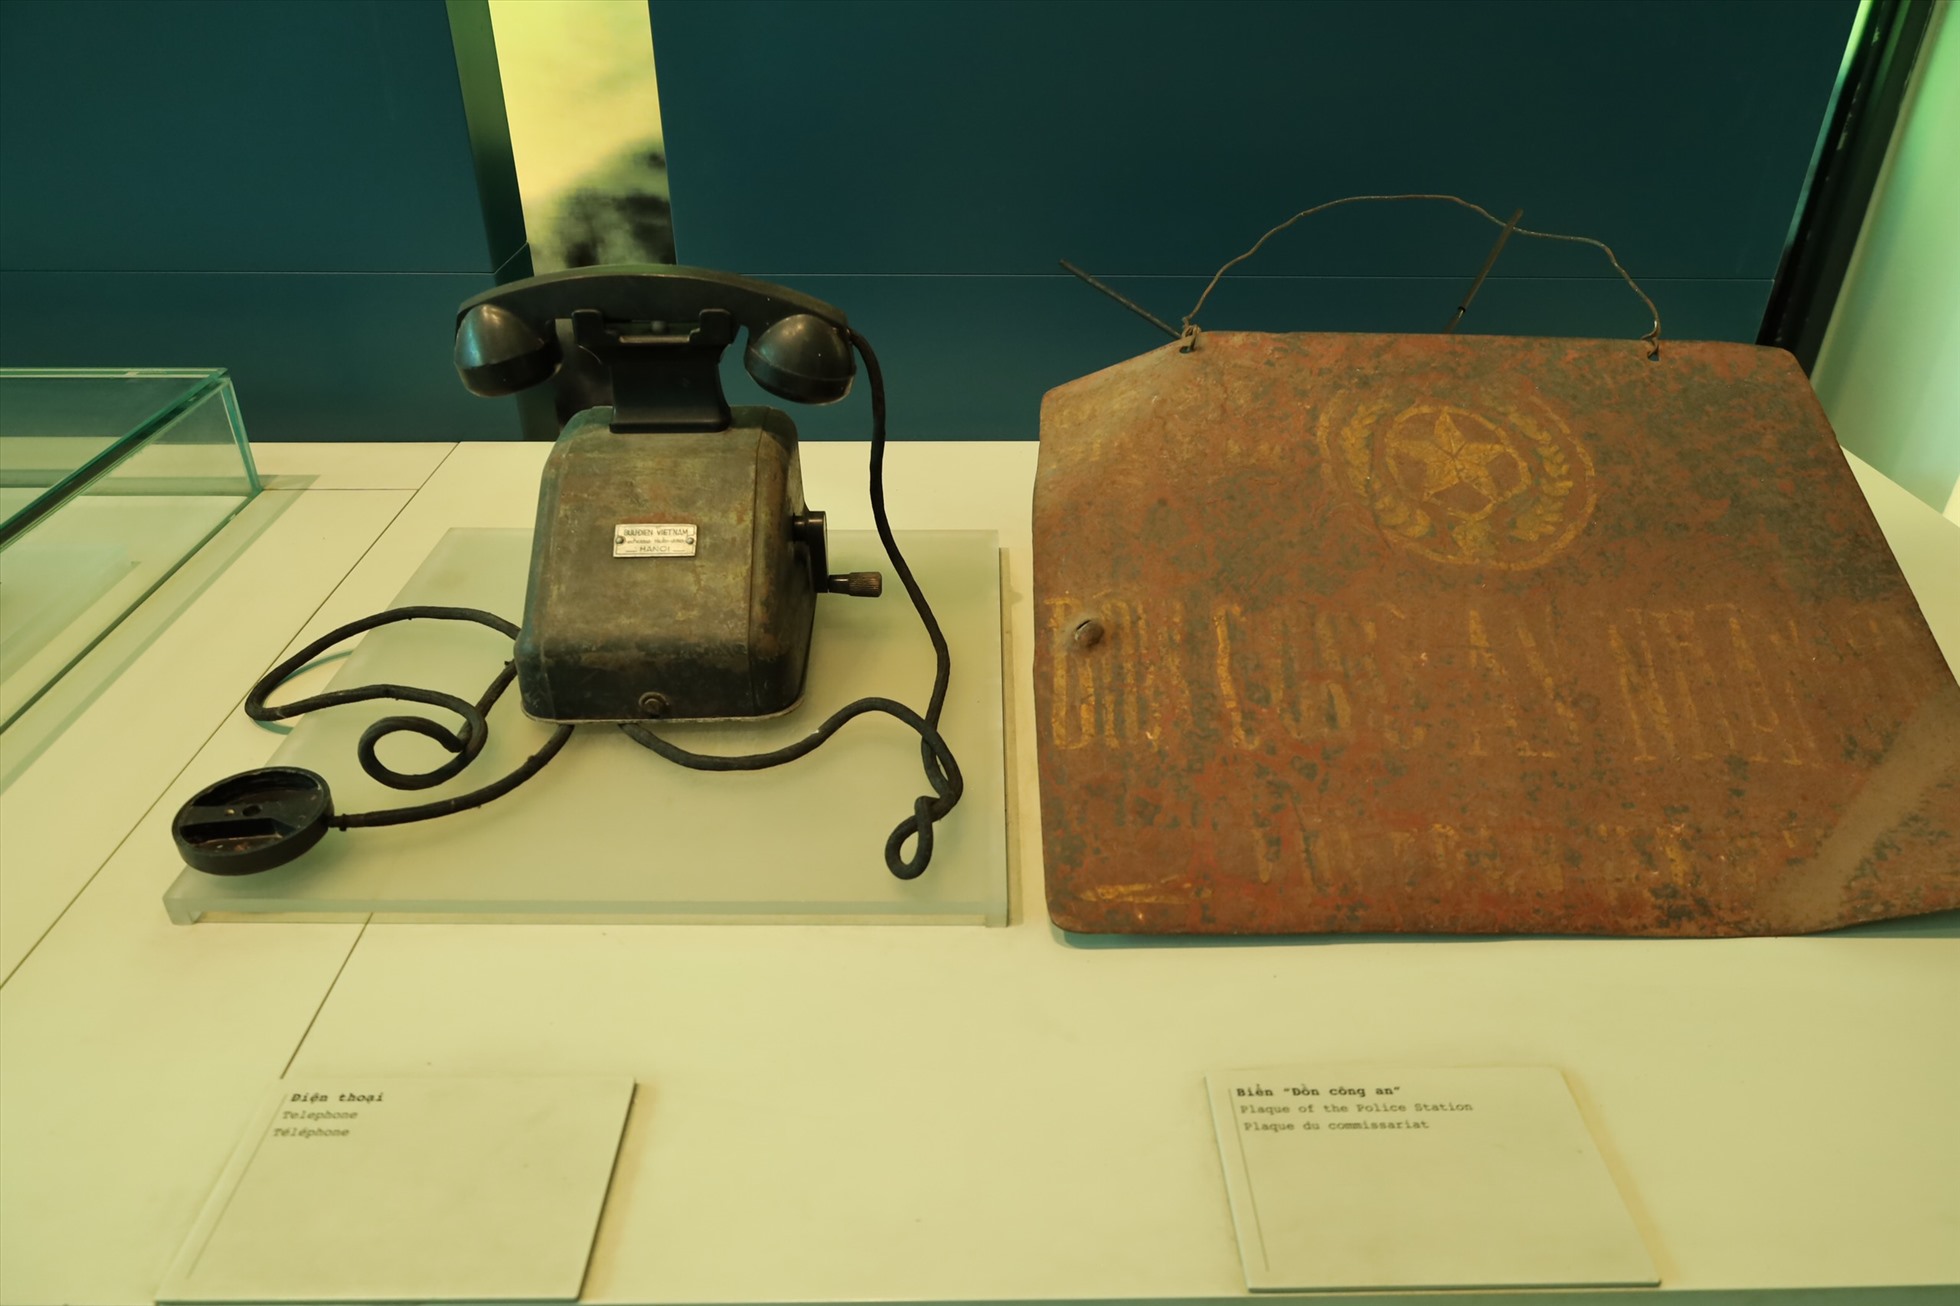 Chiếc điện thoại bàn và biển “Đồn công an” cũng được lưu giữ tại Bảo tàng  Công an Hà Nội. Ảnh: Nguyễn Thuý